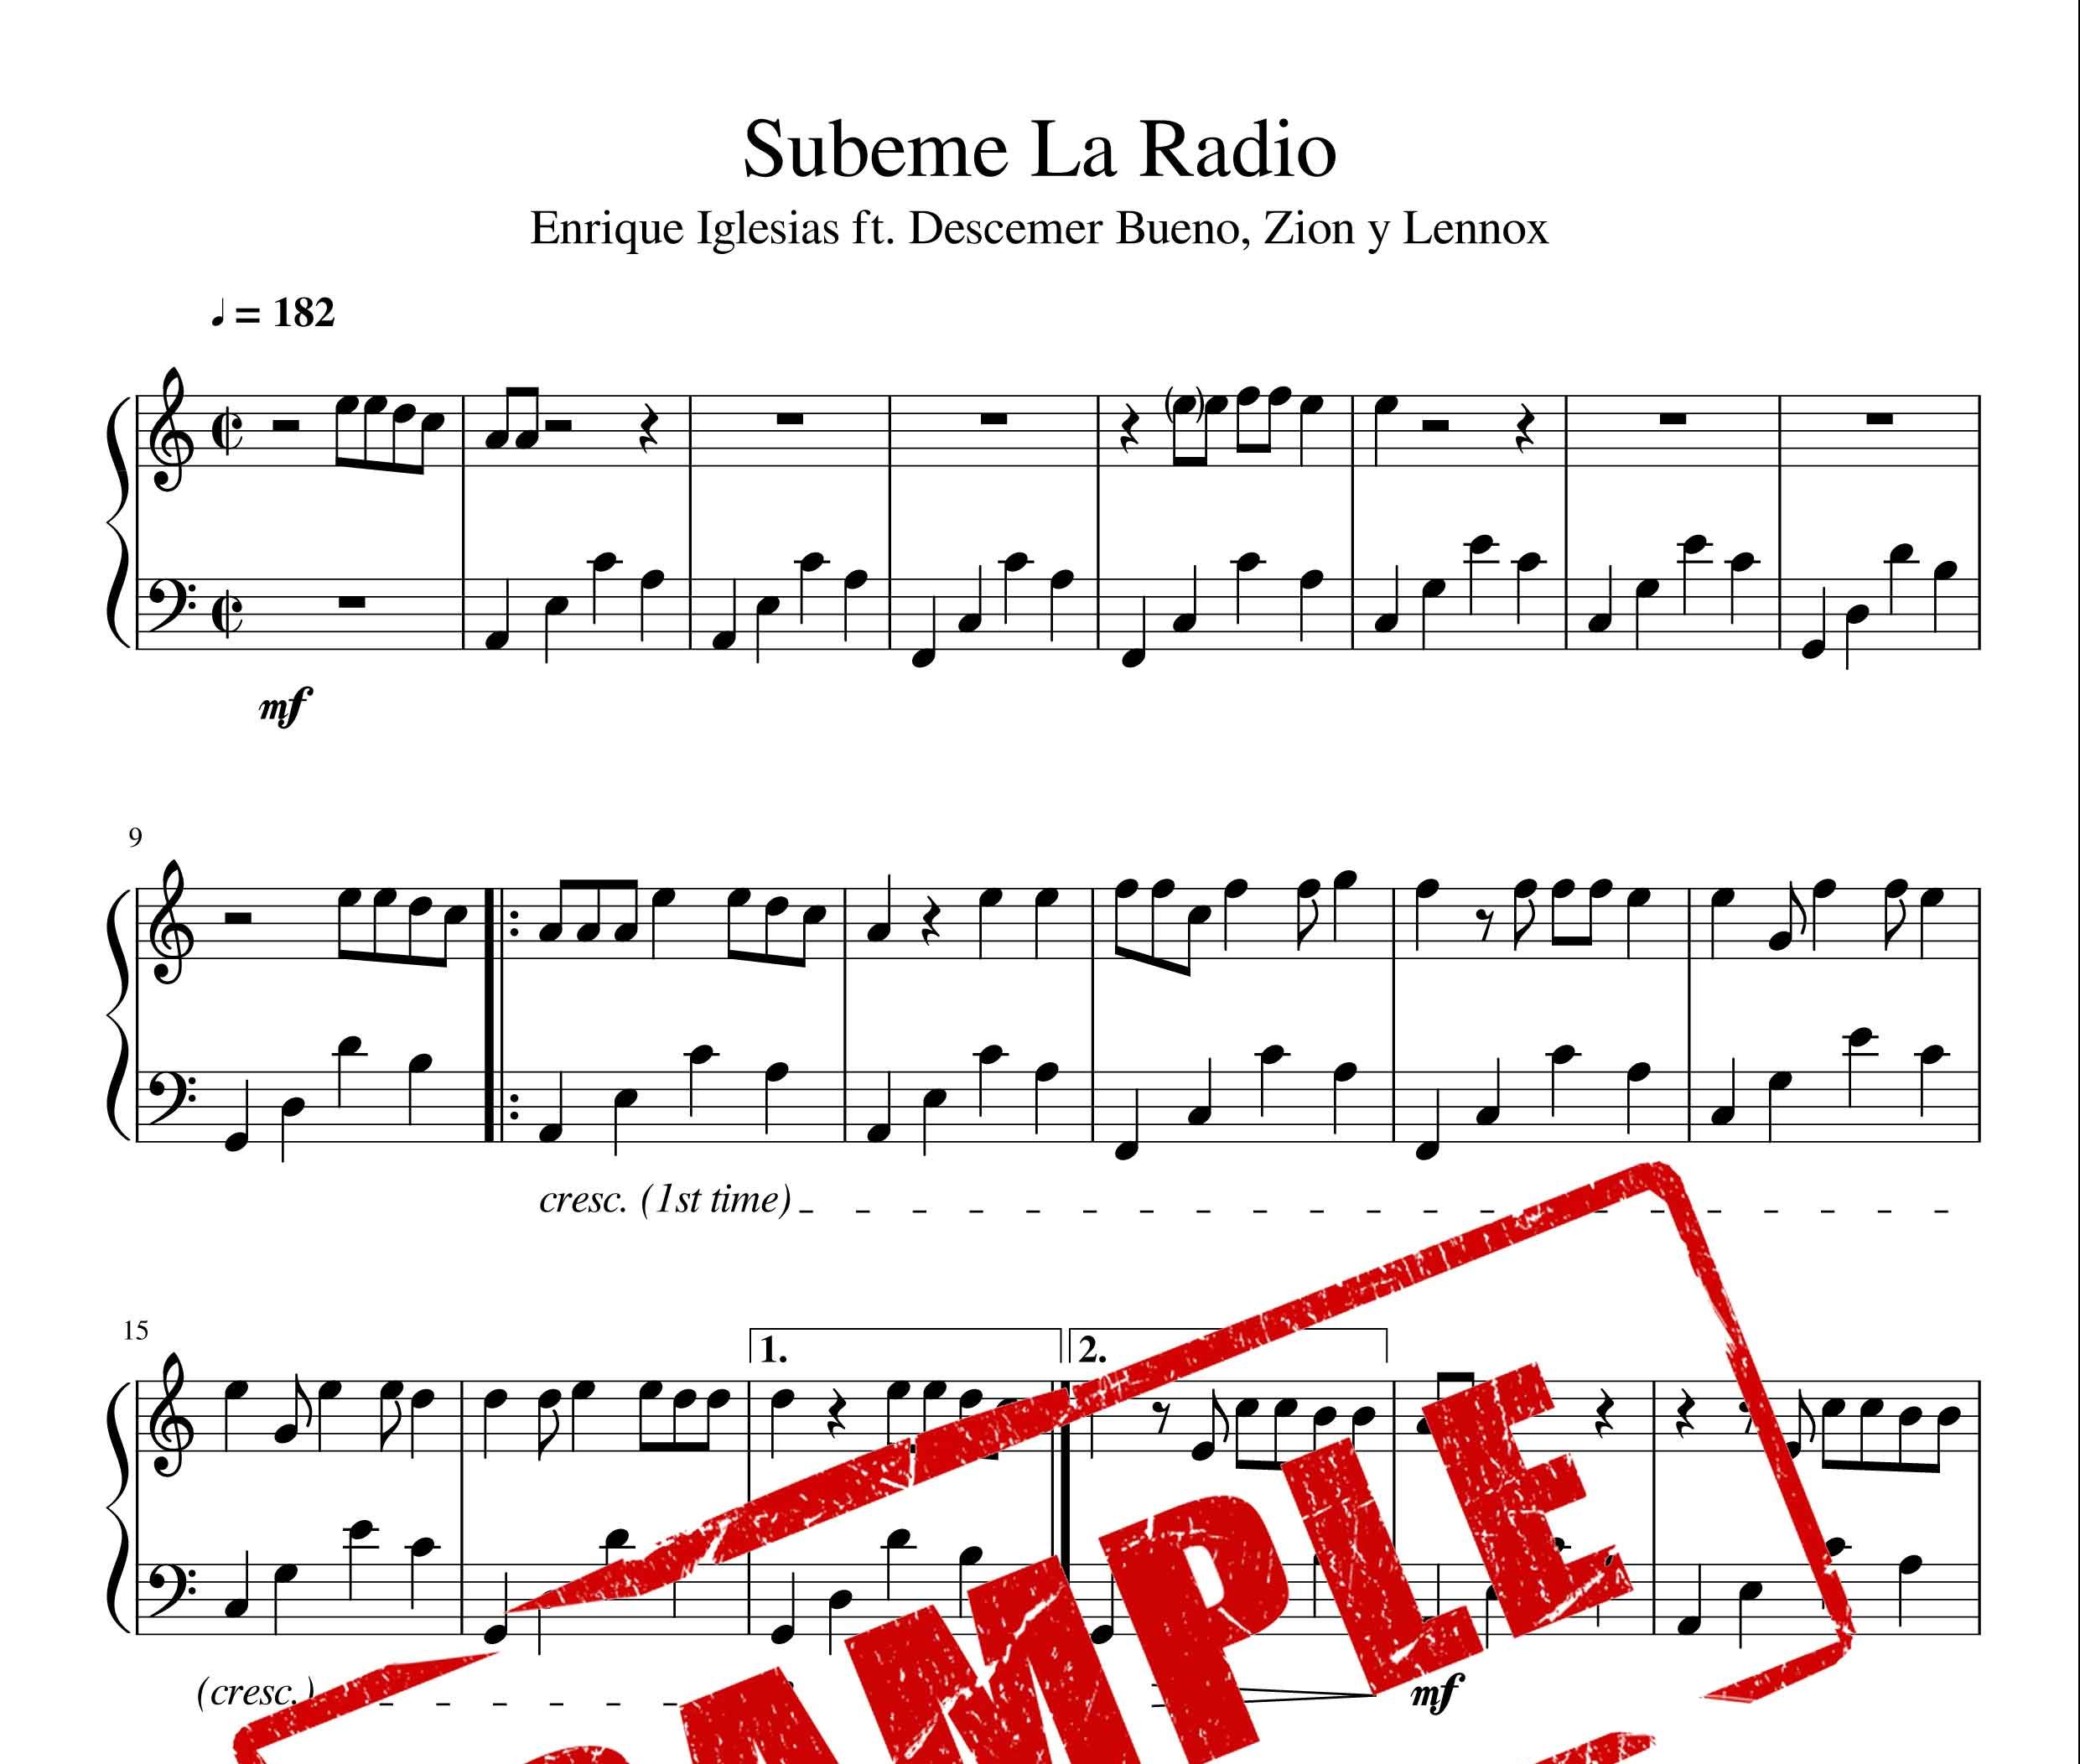 نت آهنگ subeme la radio از انریکه ایگلسیاس Enrique iglesias برای پیانو